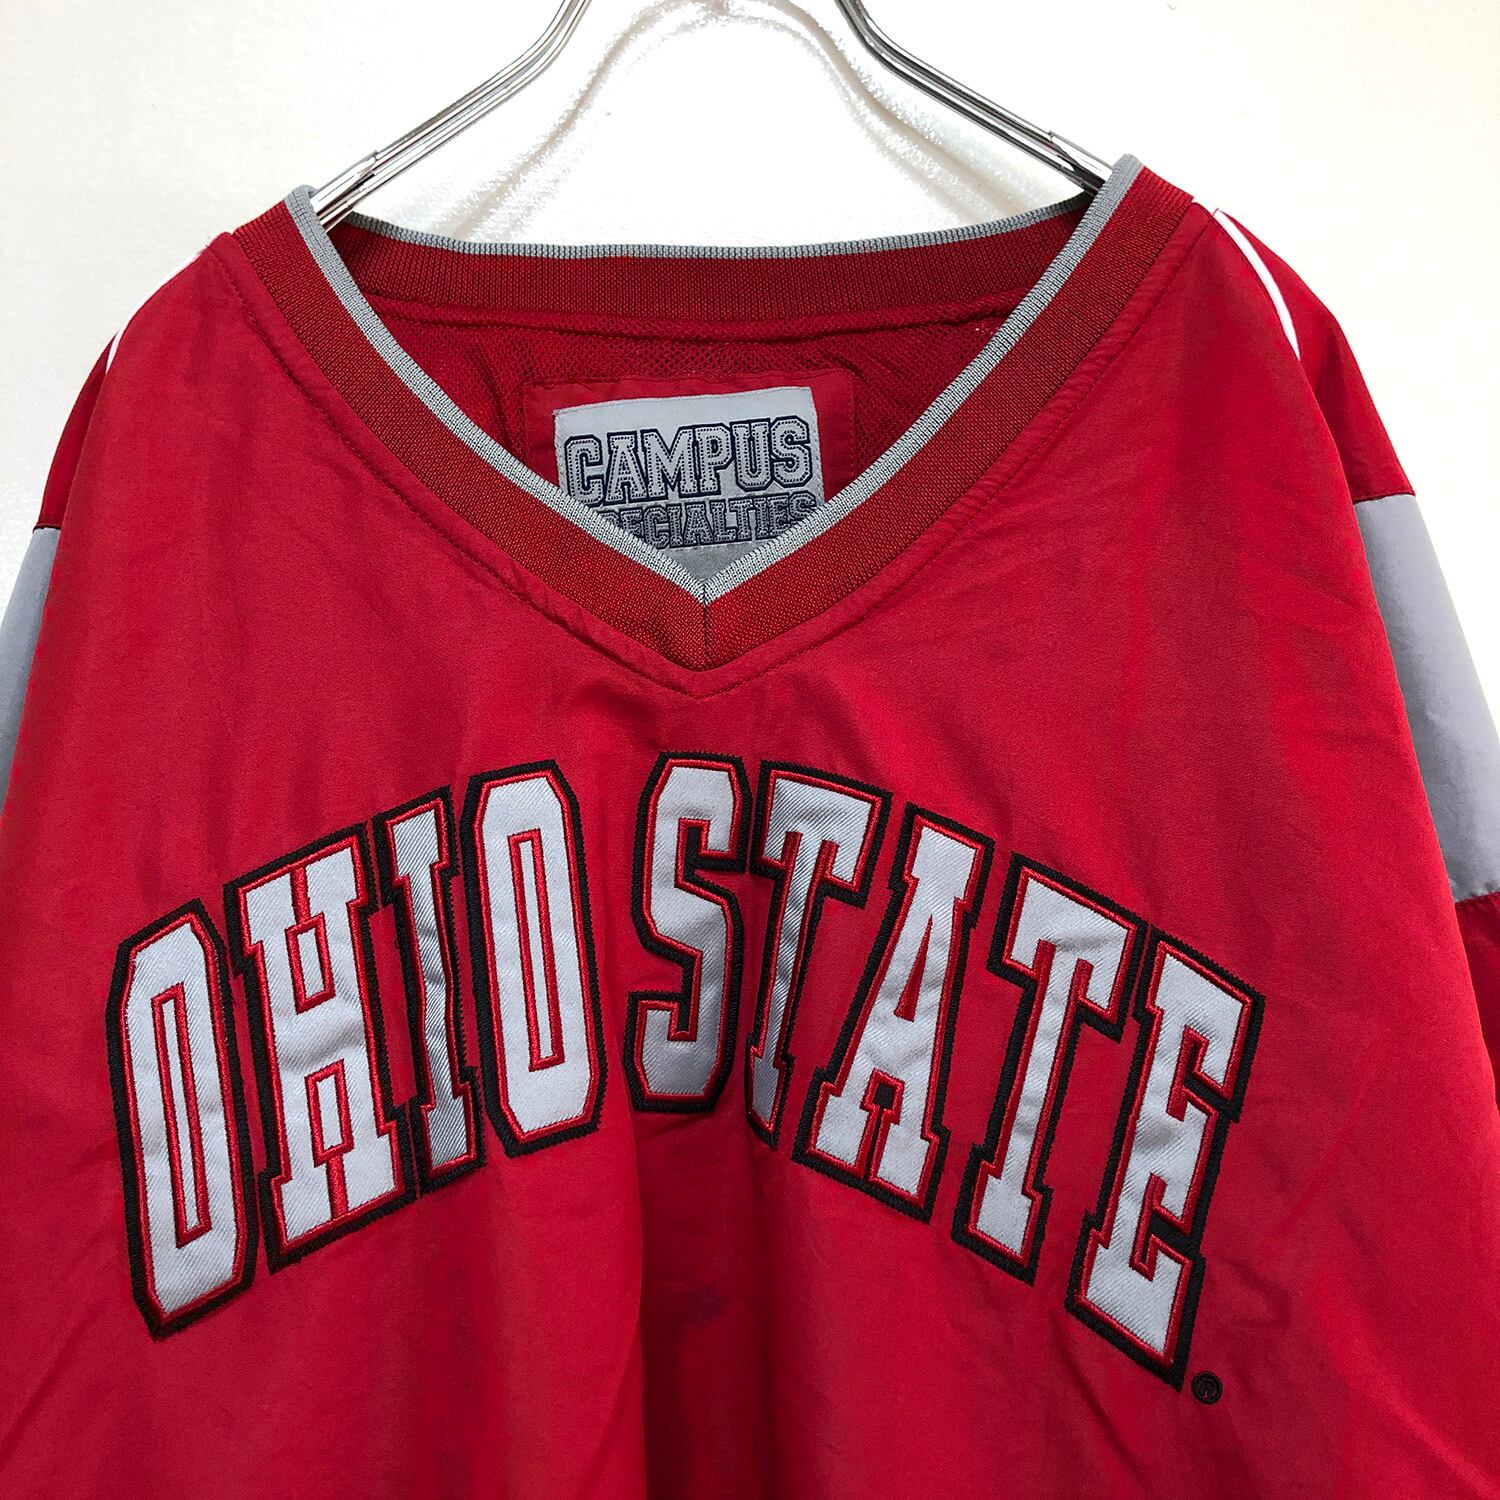 USA カレッジ ナイロンプルオーバージャケット オハイオ大学 赤×黒 刺繍